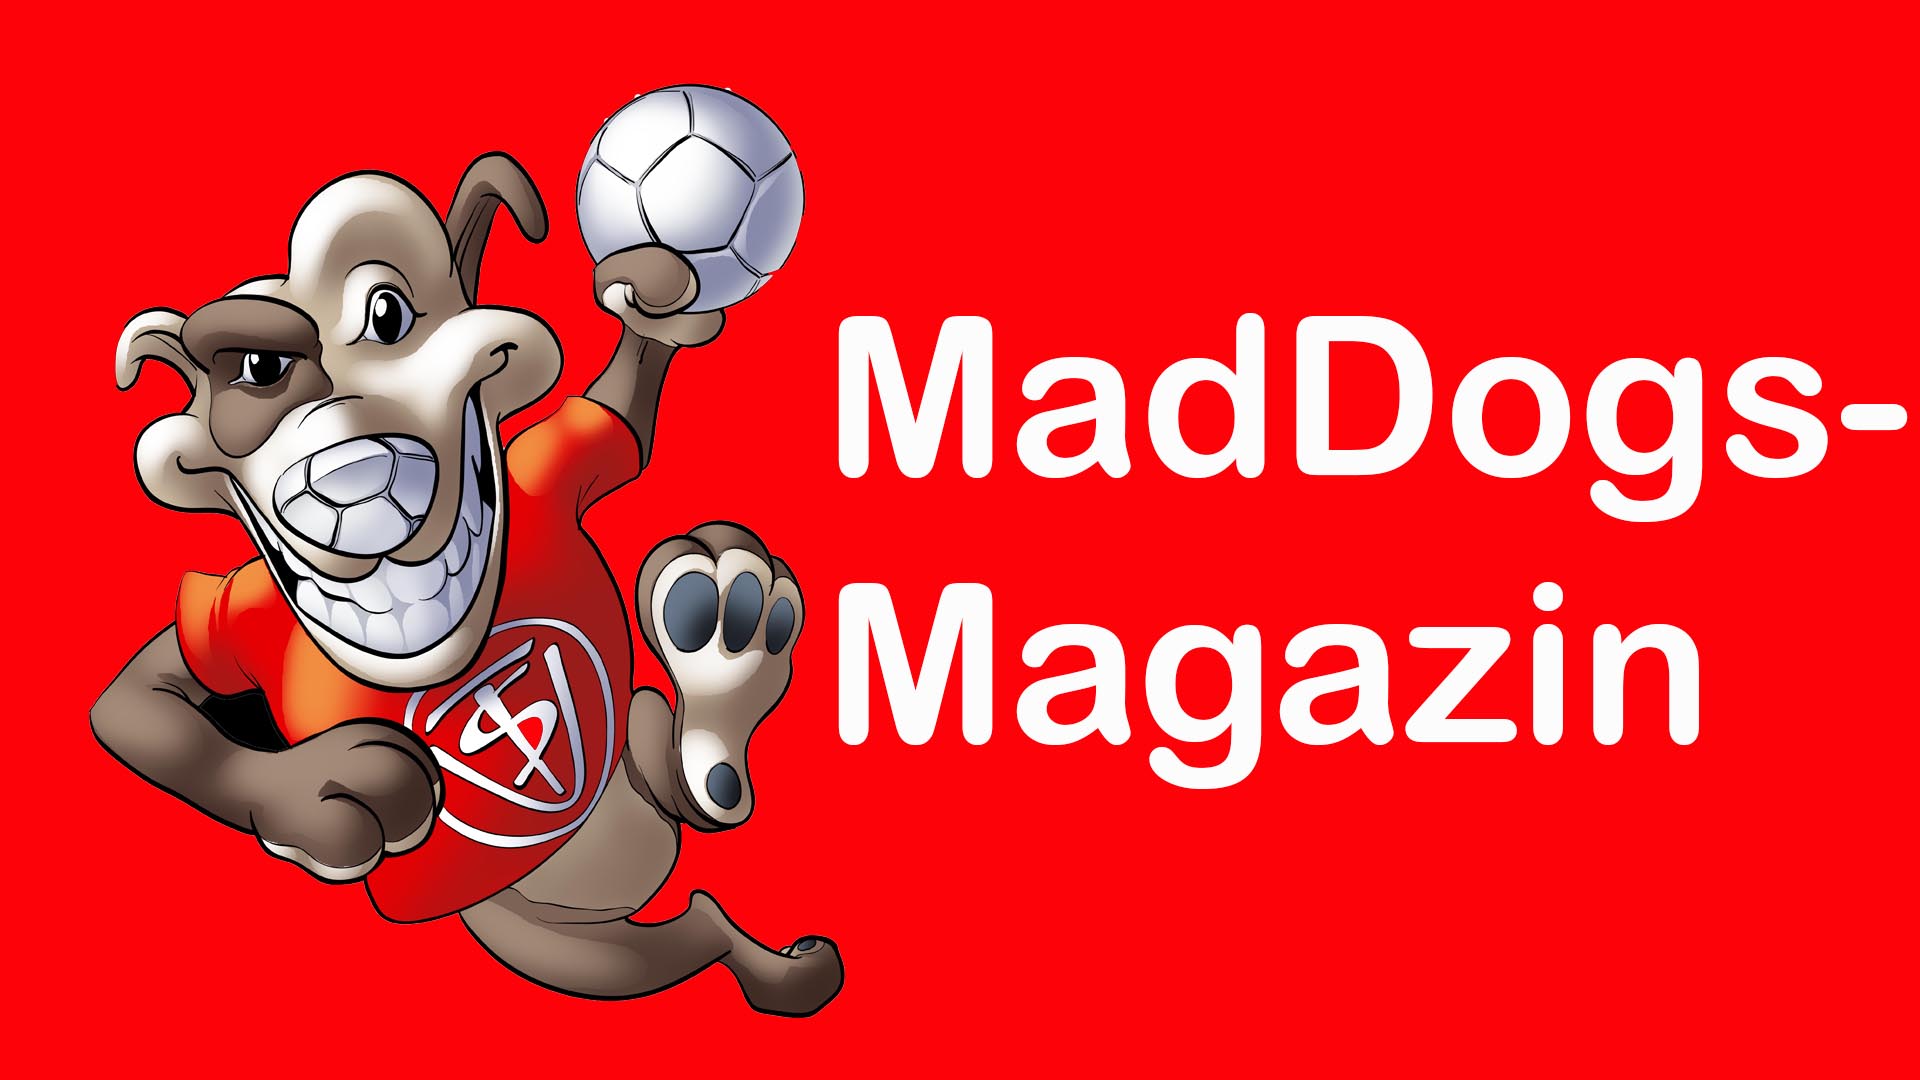 MadDogs-Magazin startet in wenigen Wochen